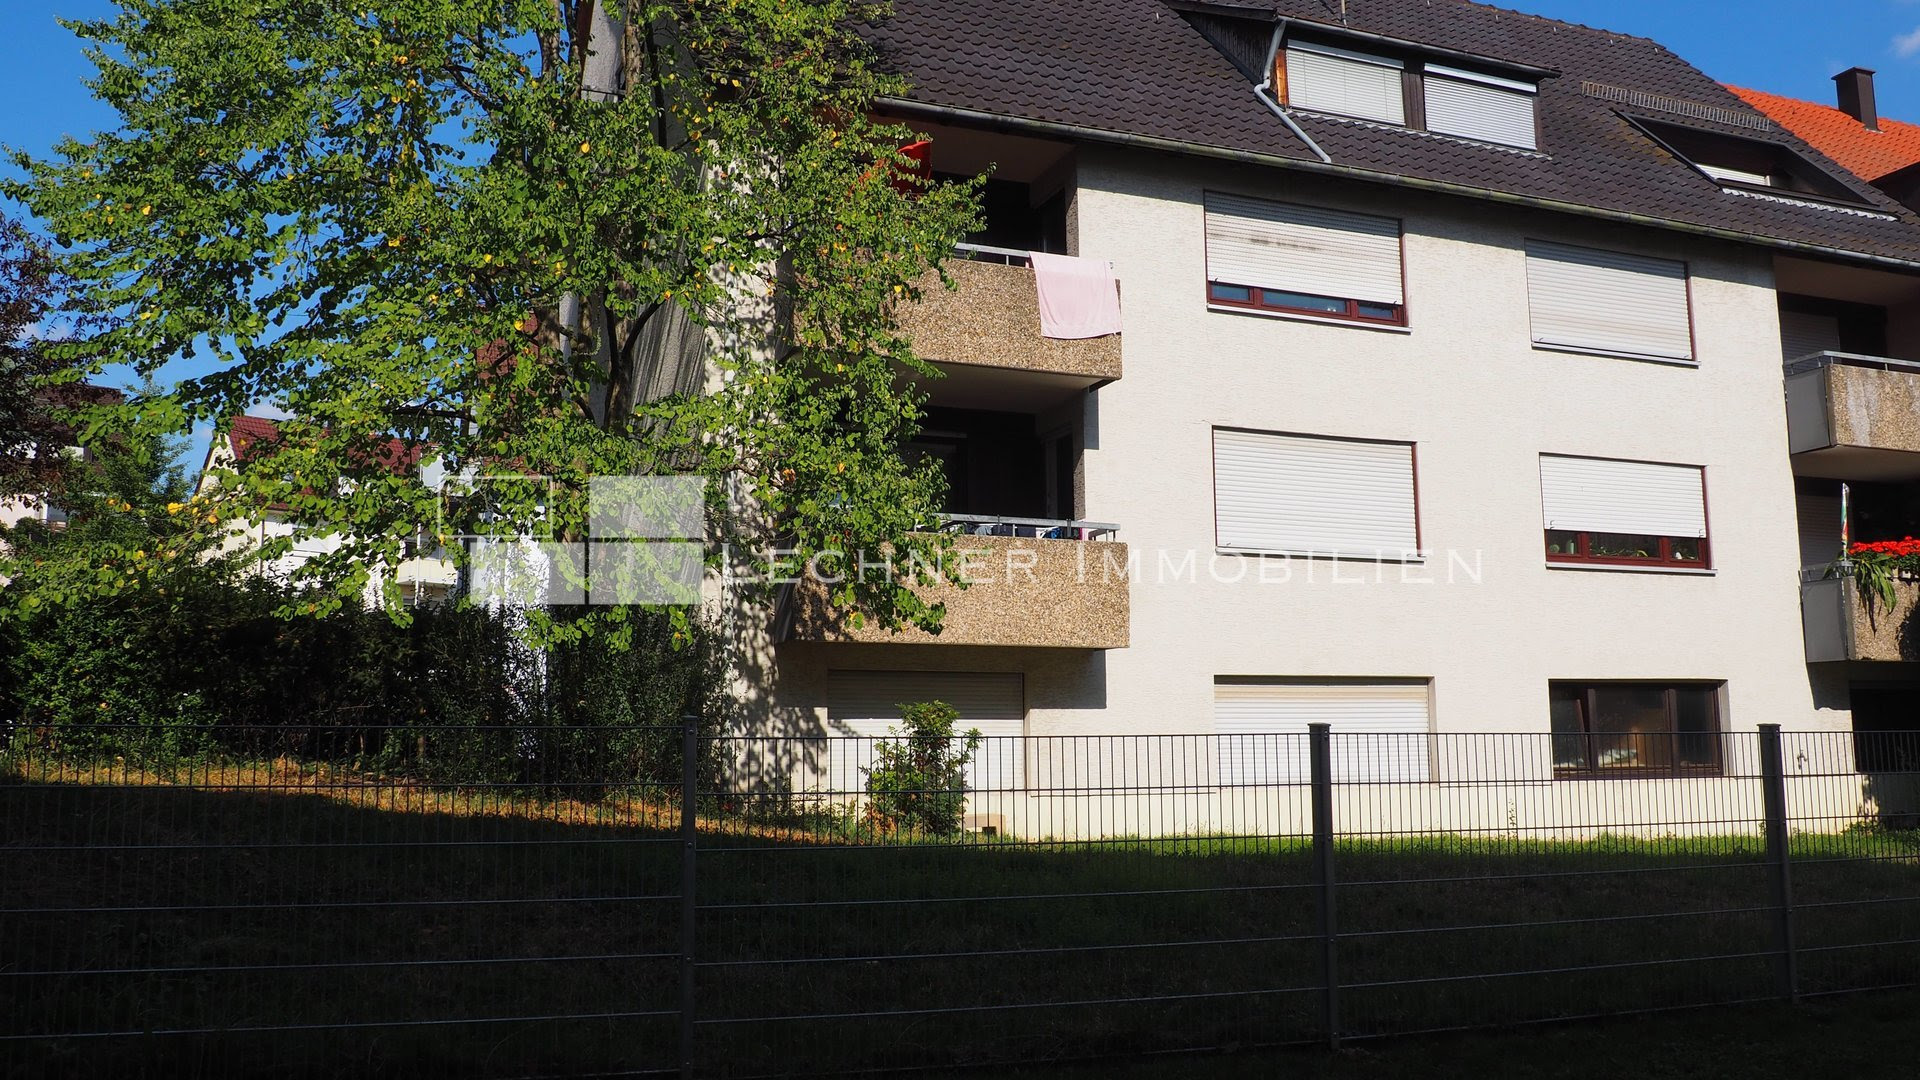 2 Familienhaus Kaufen In Stuttgart